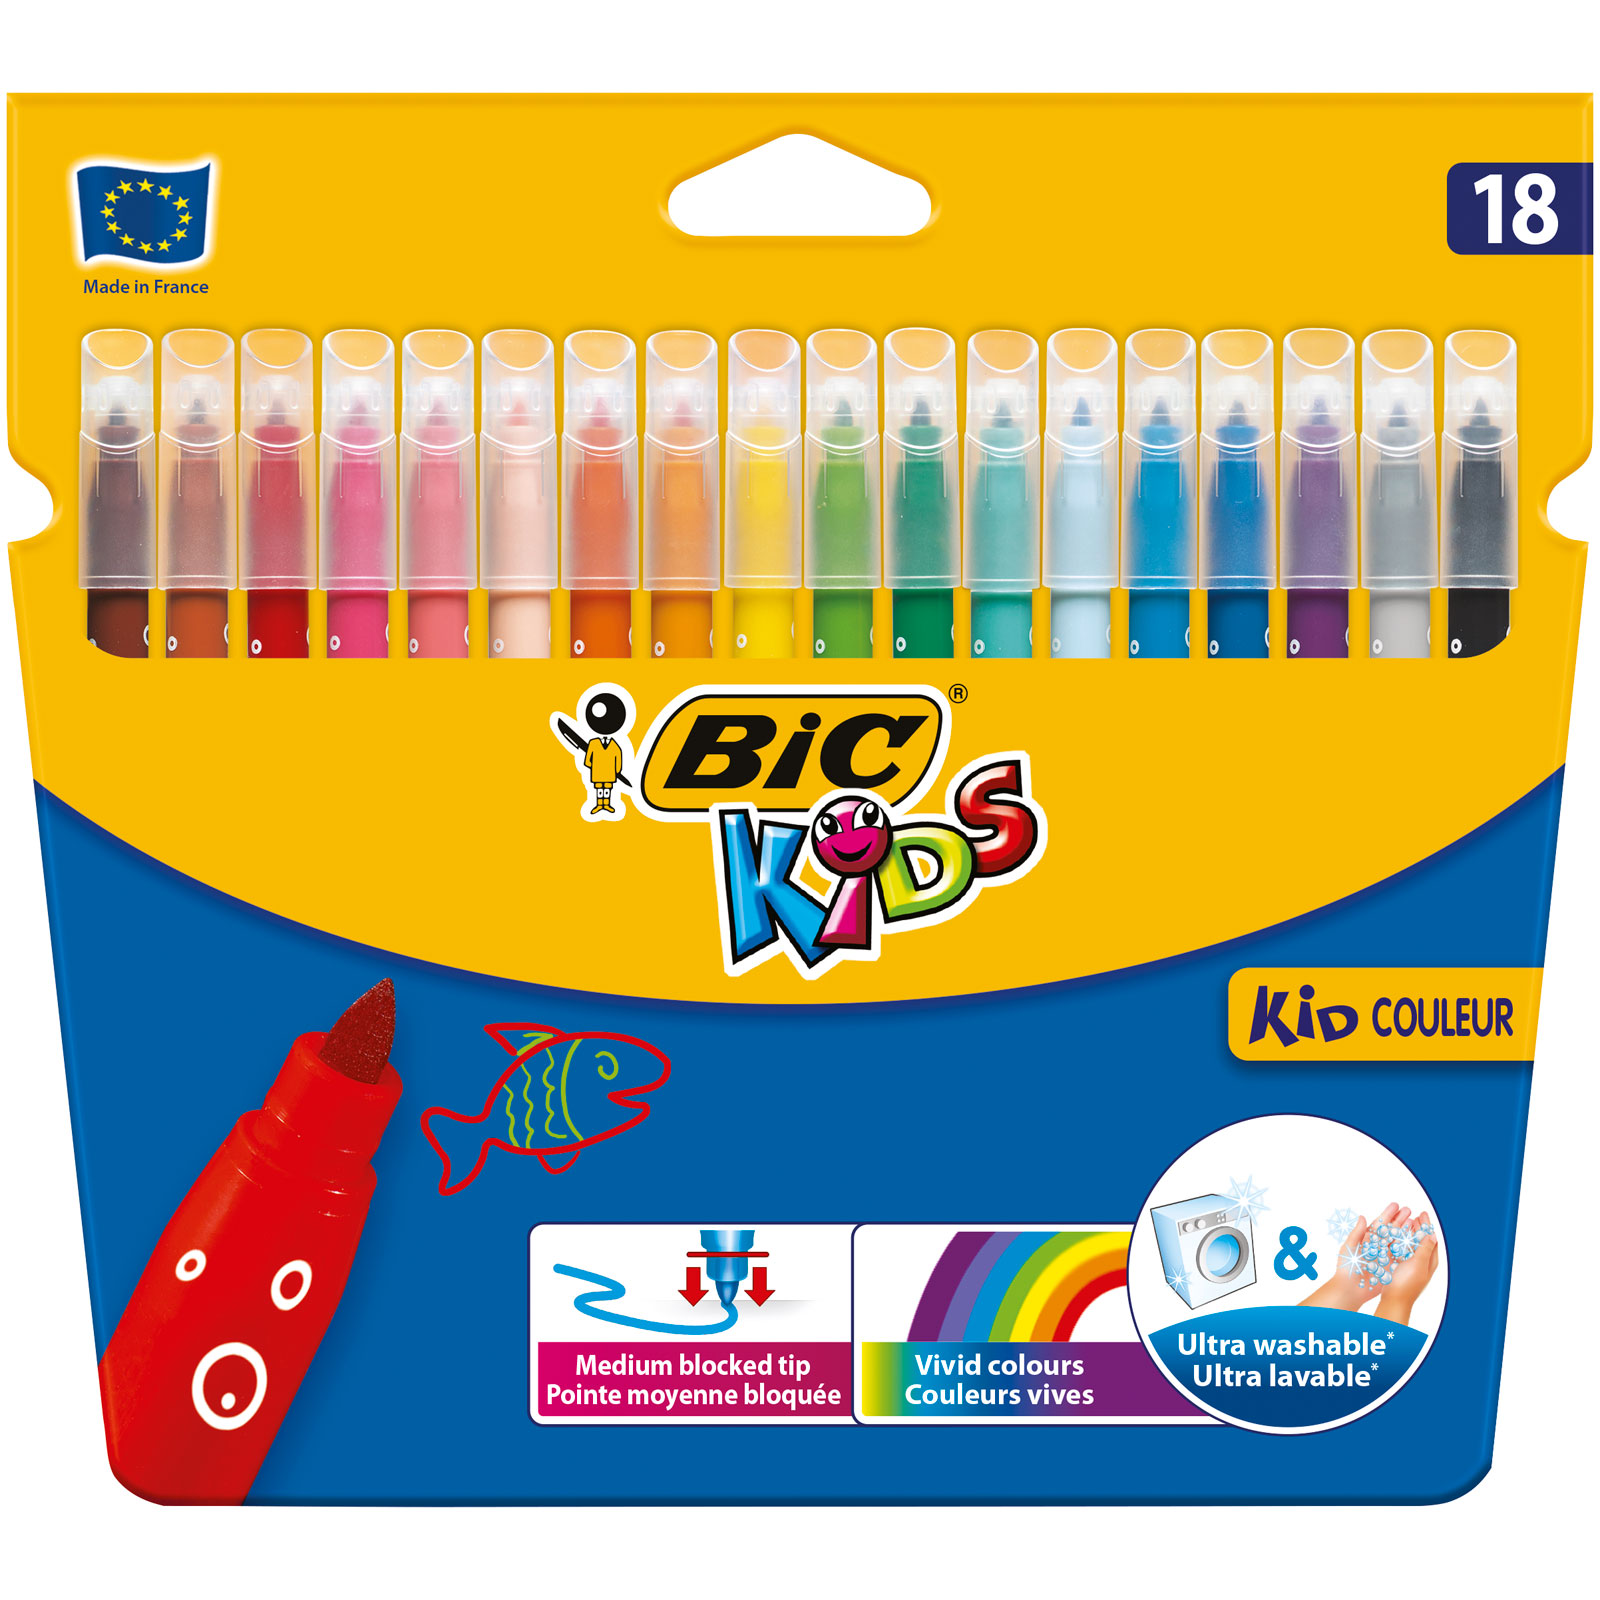 Pack BIC Kids Kid Couleur Feutres de Coloriage - Etui Carton de 18